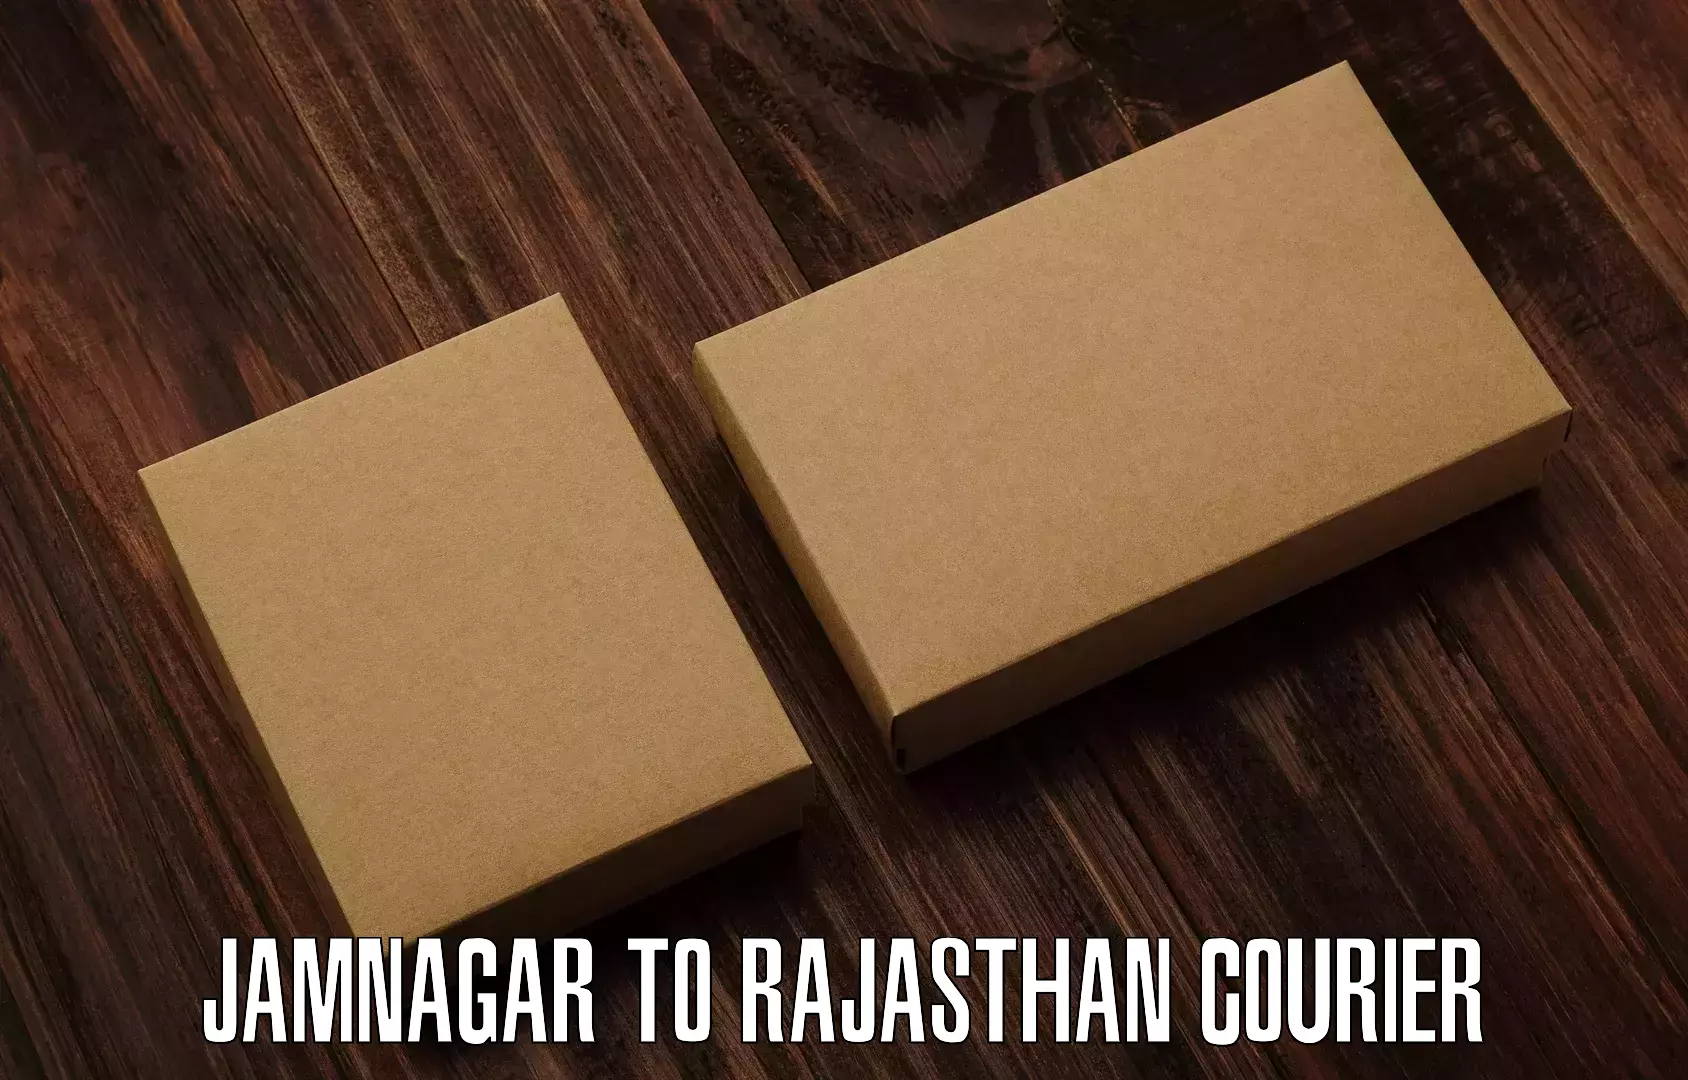 Global shipping solutions Jamnagar to Rajasthan